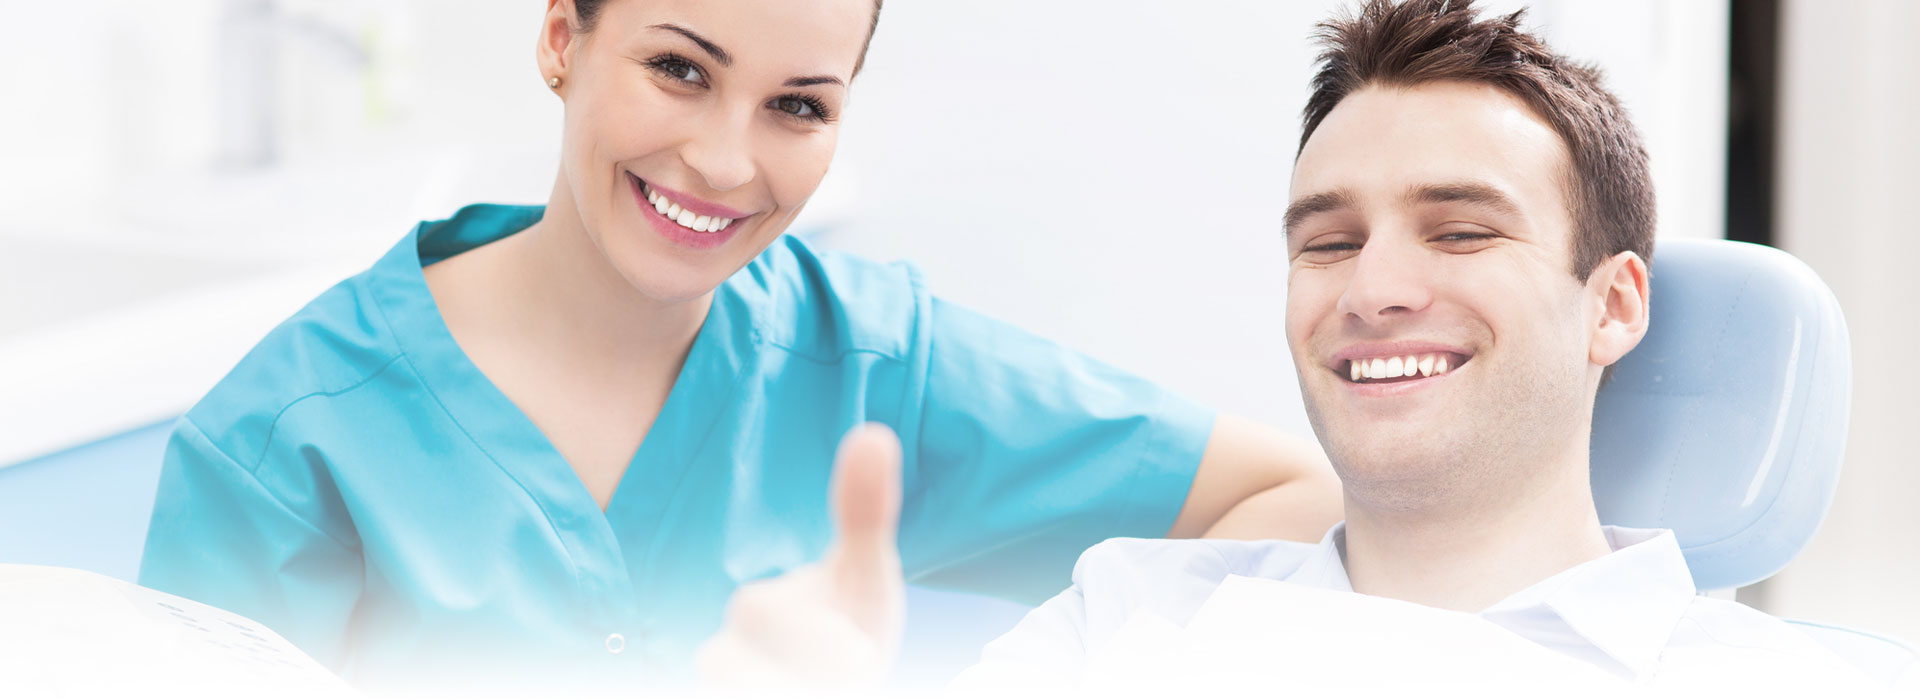 Crestwood Dental Group nurse and patient smiling together